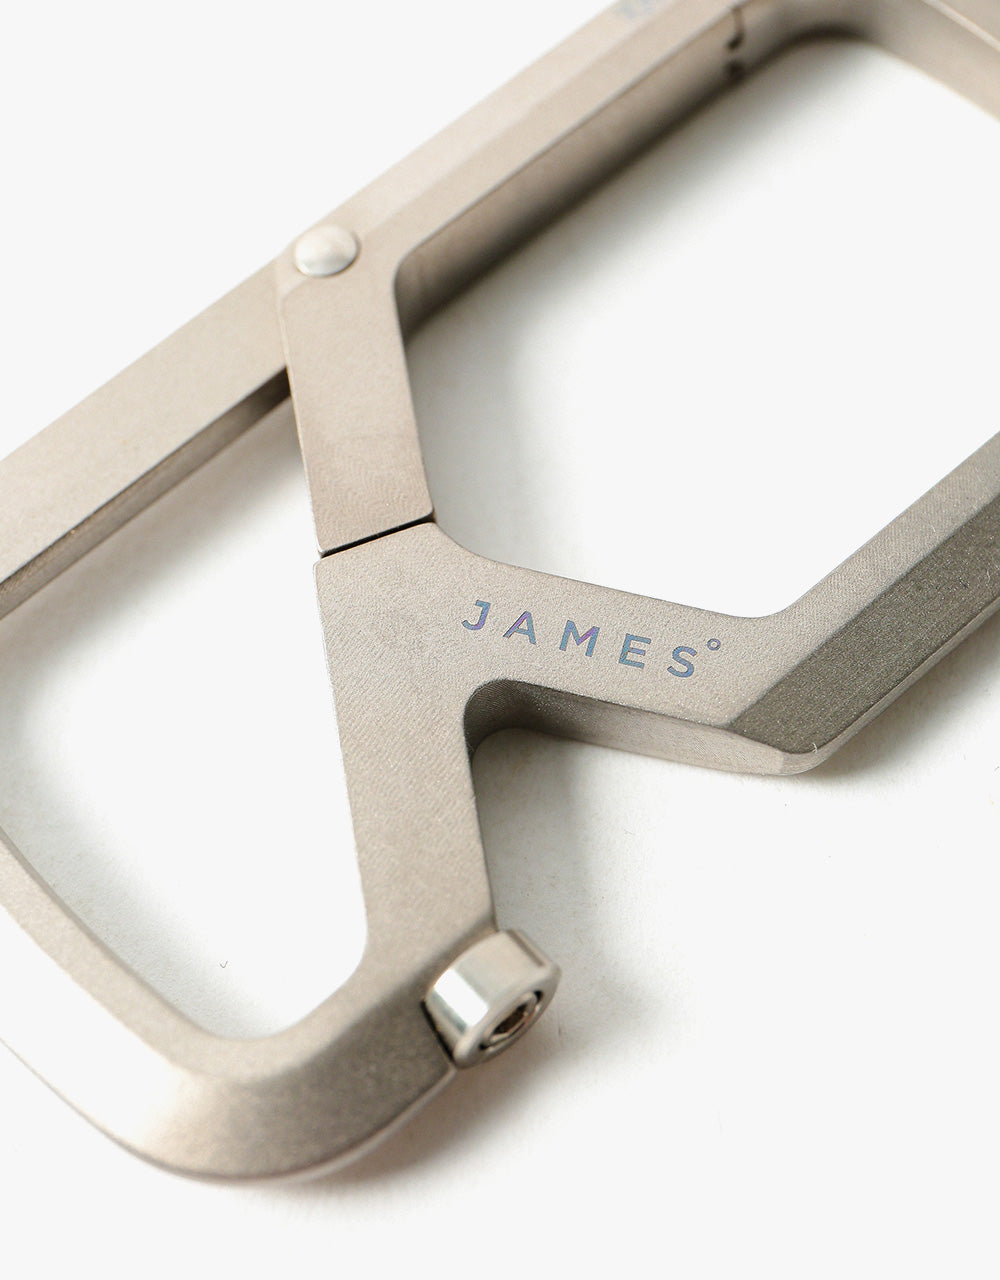 James The Mehlville 'Carabiner' Keychain - Titanium/Titanium